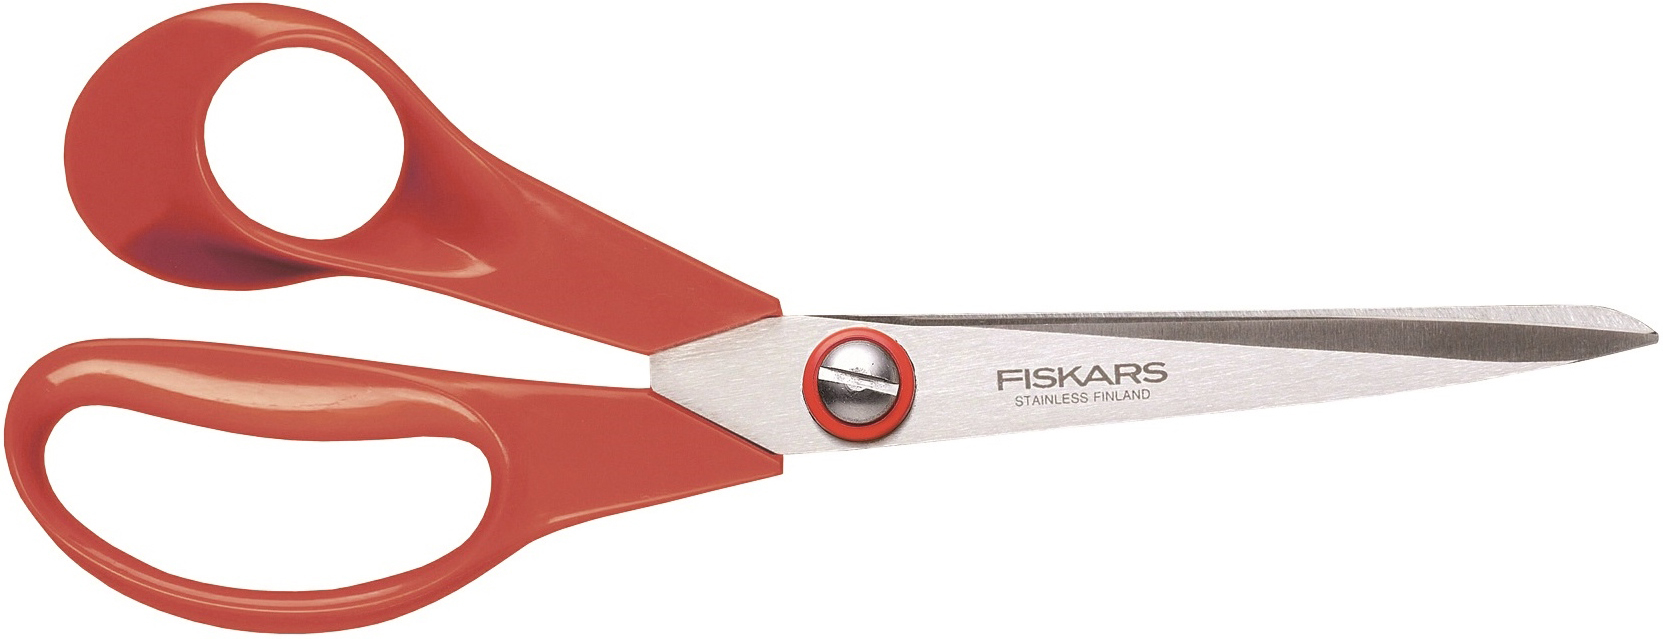 Fiskars Classic universalsax, 21 cm, vänster